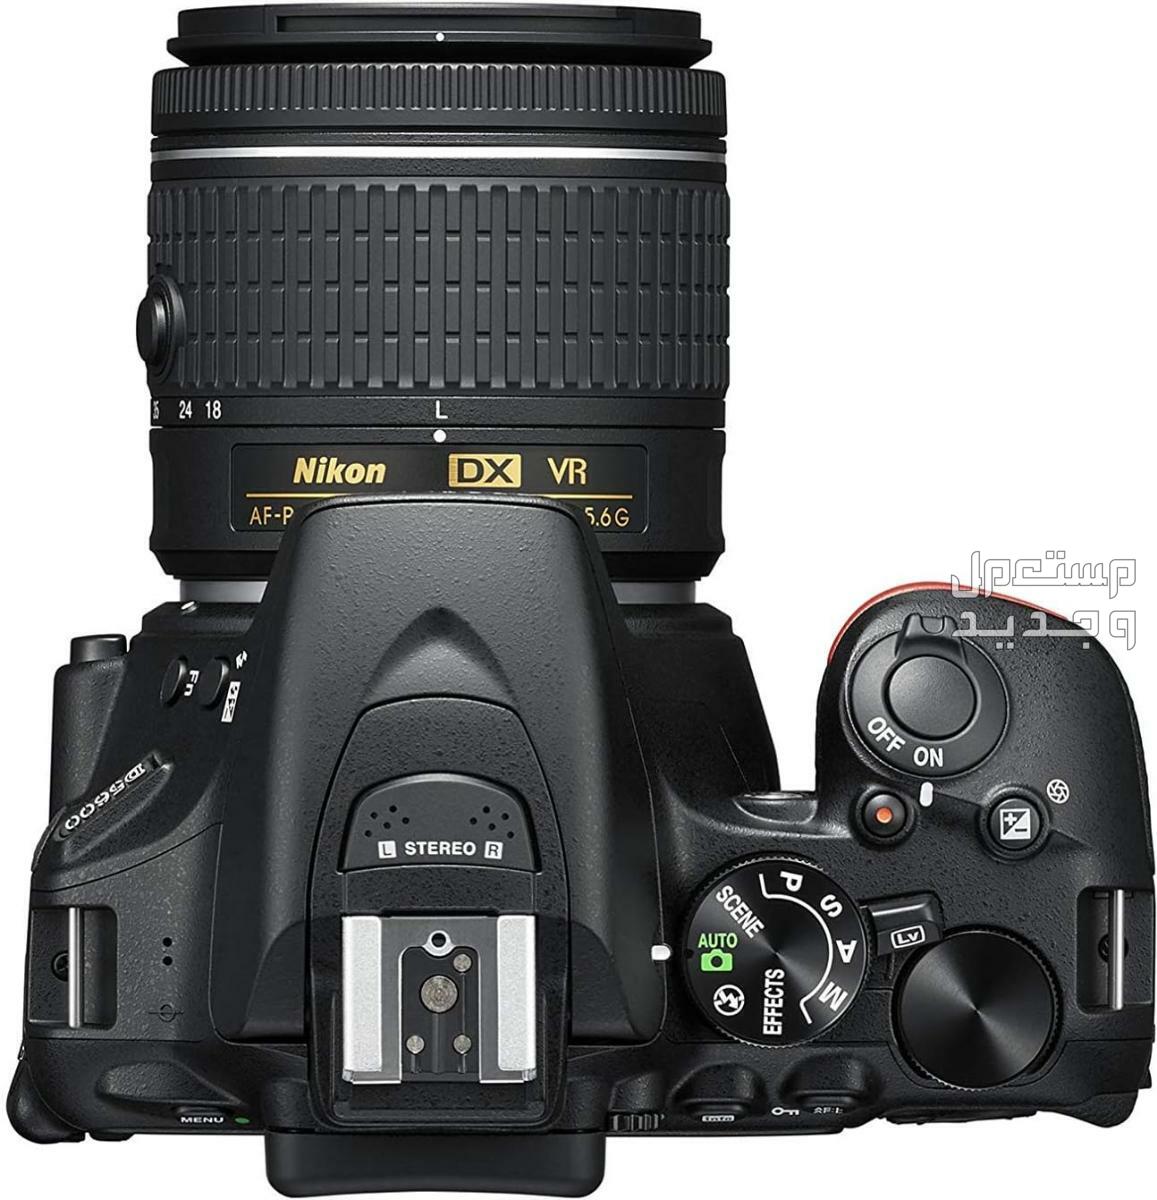 10 كاميرات تصوير ماركات عالمية بأسعار رخيصة في المغرب مميزات كاميرا Nikon D5600